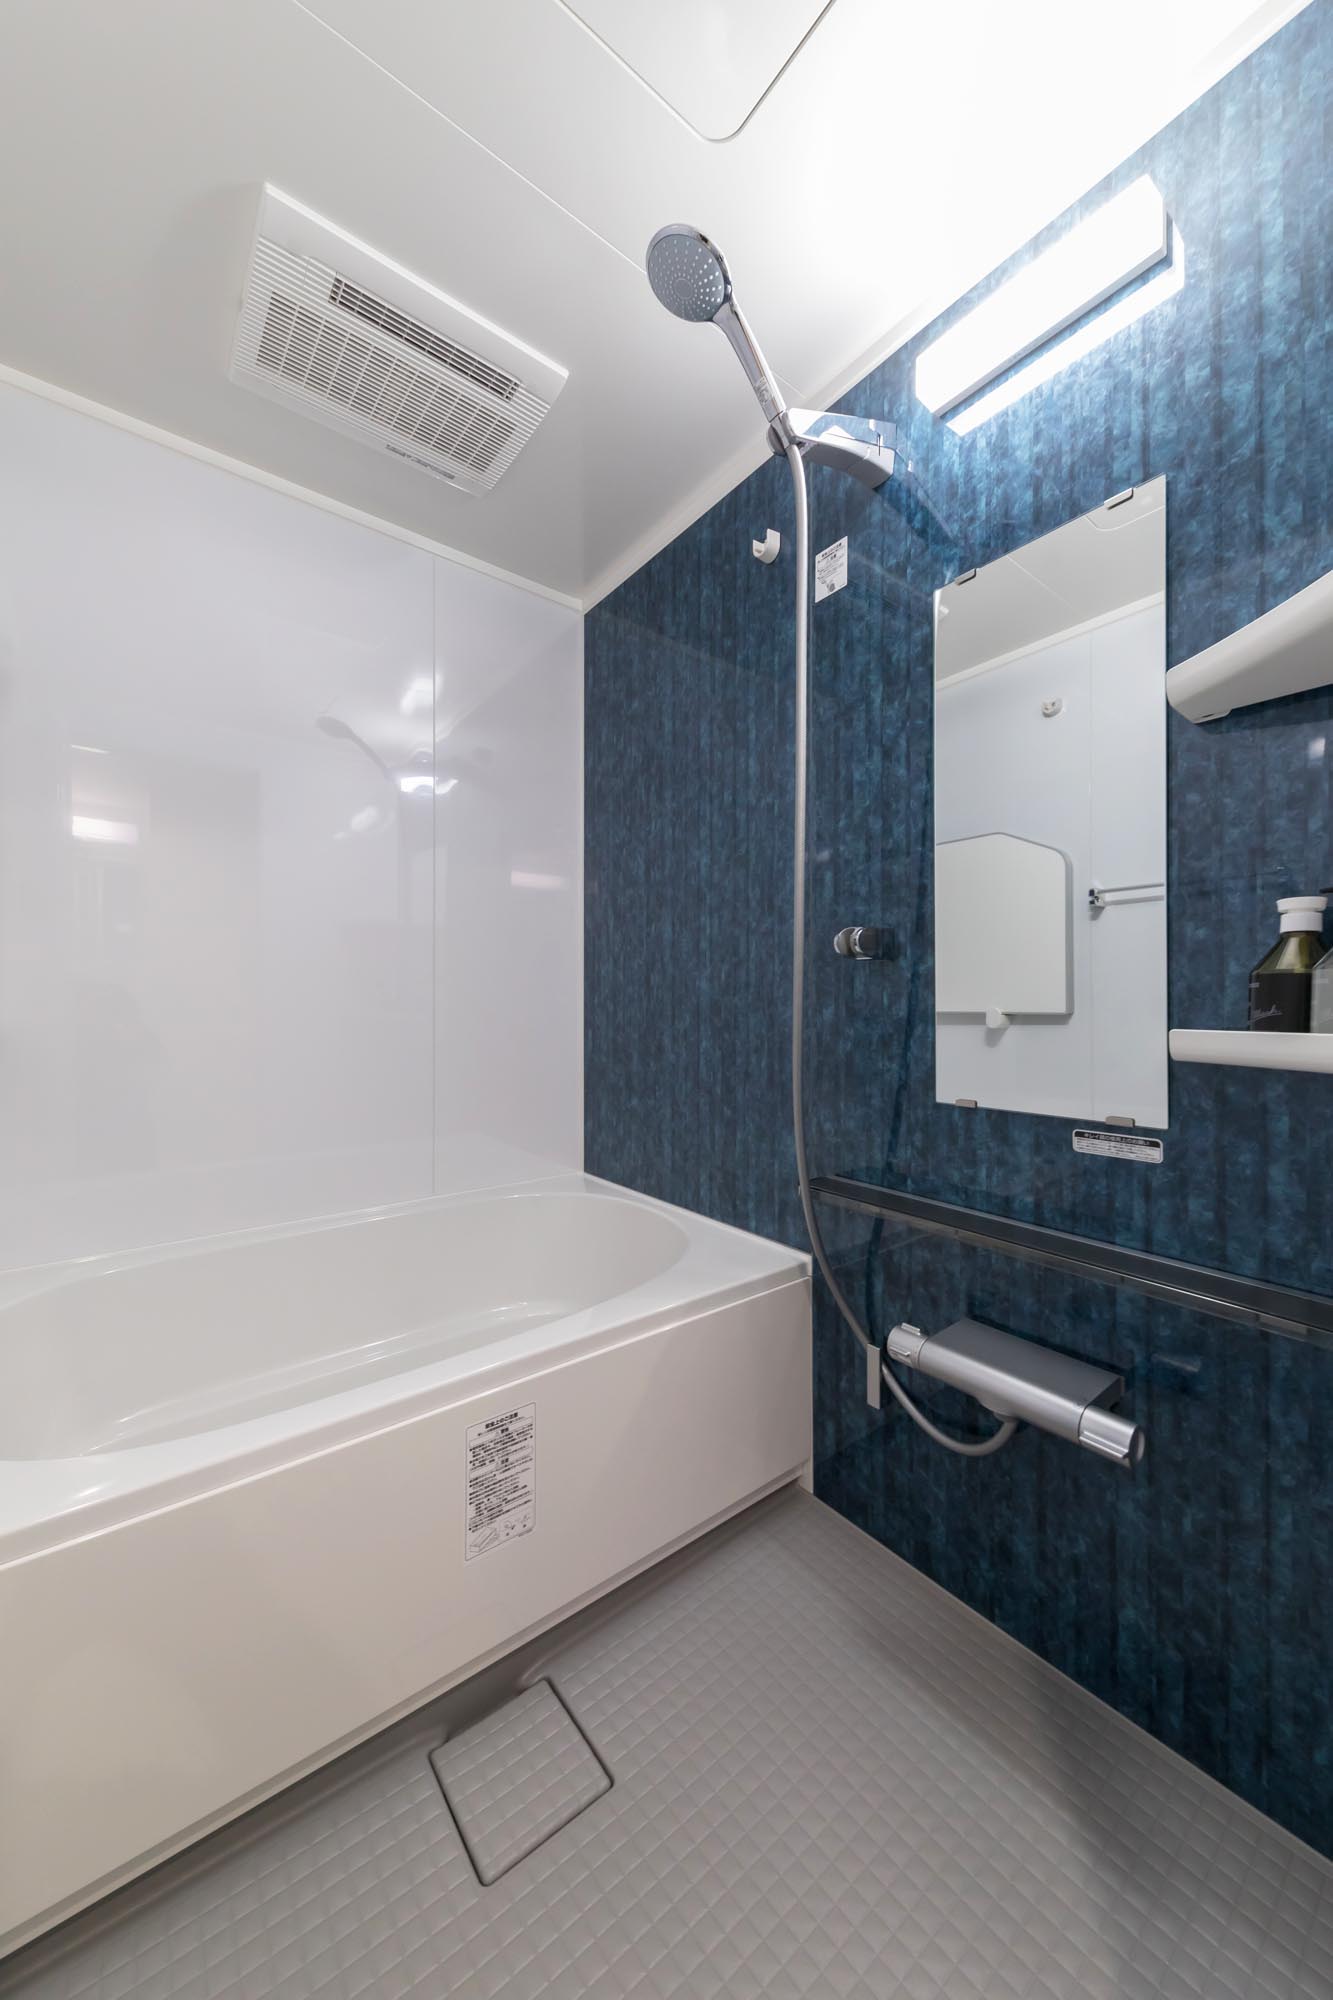 リクシルリノビオVトパーズブルーで北欧風マンション浴室リフォーム